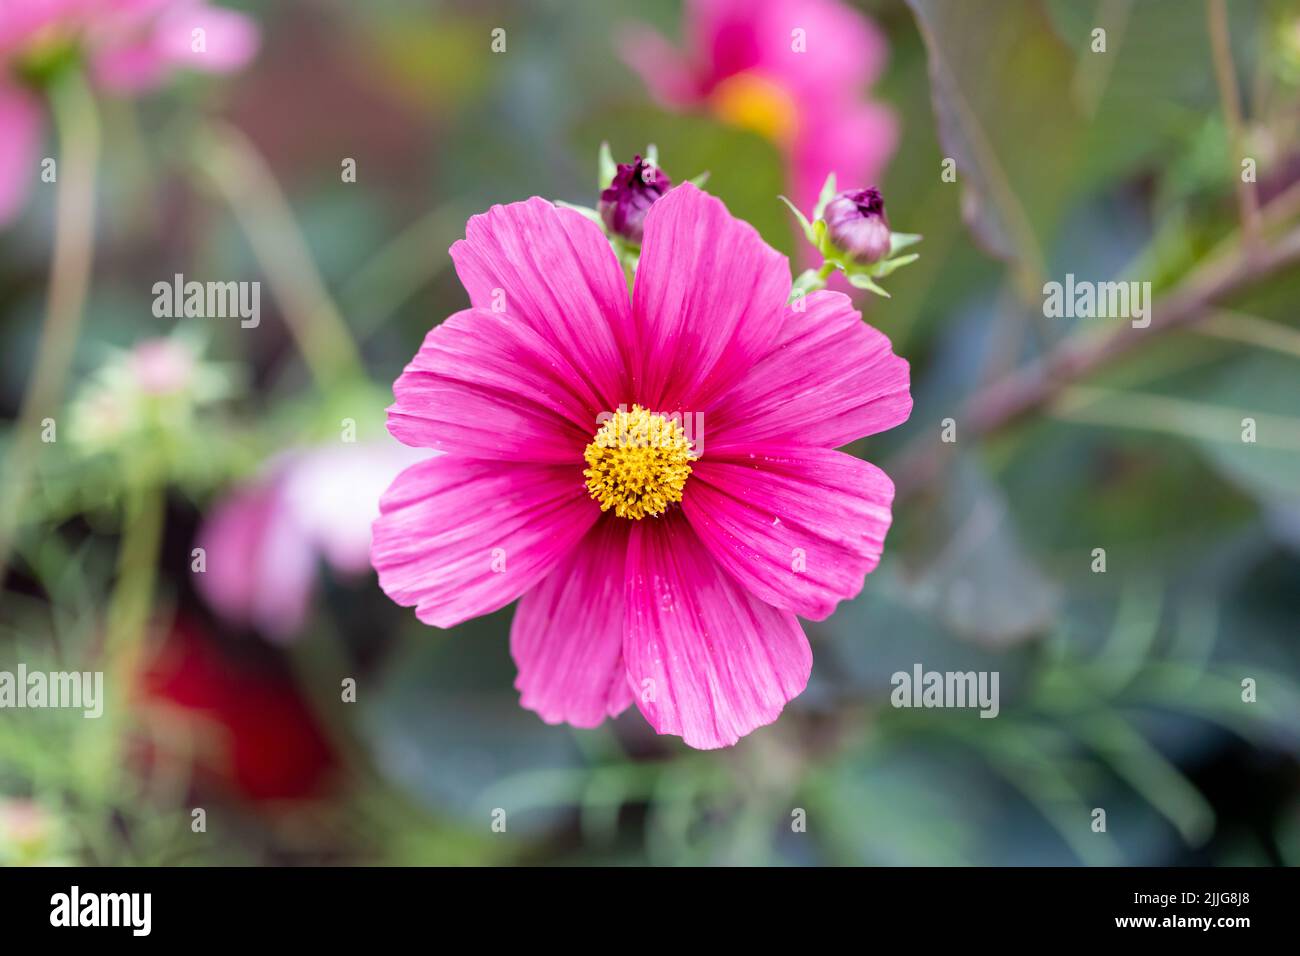 Cosmos bipinnatus (garden cosmos) pink flower in an English garden closeup Stock Photo